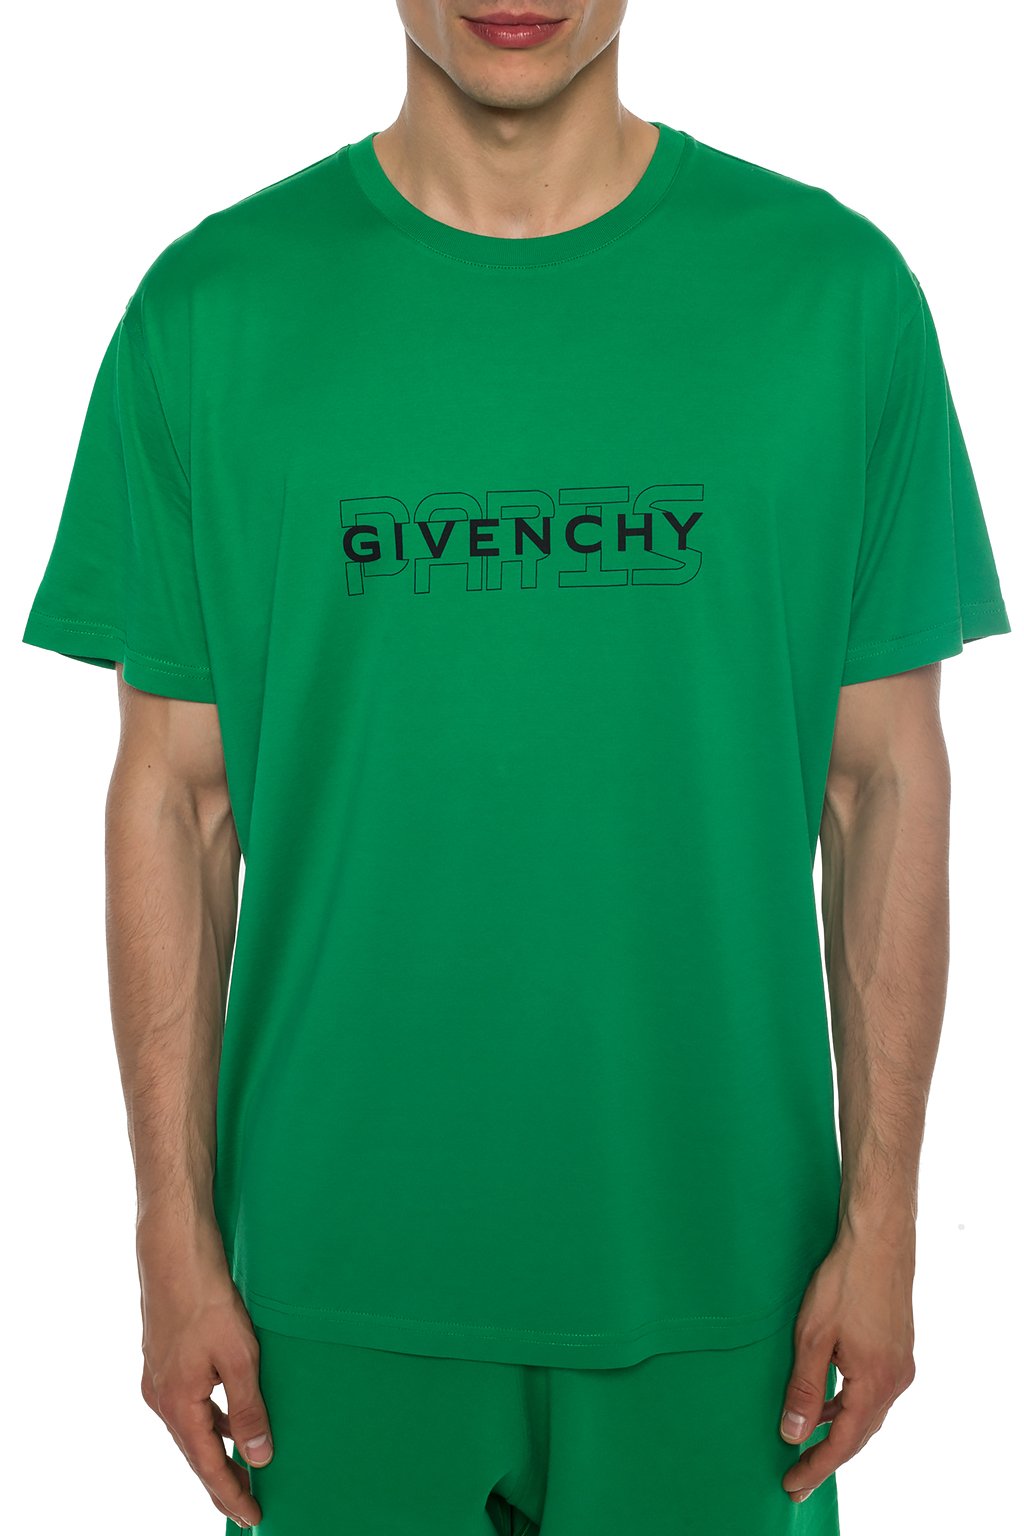 givenchy green t shirt